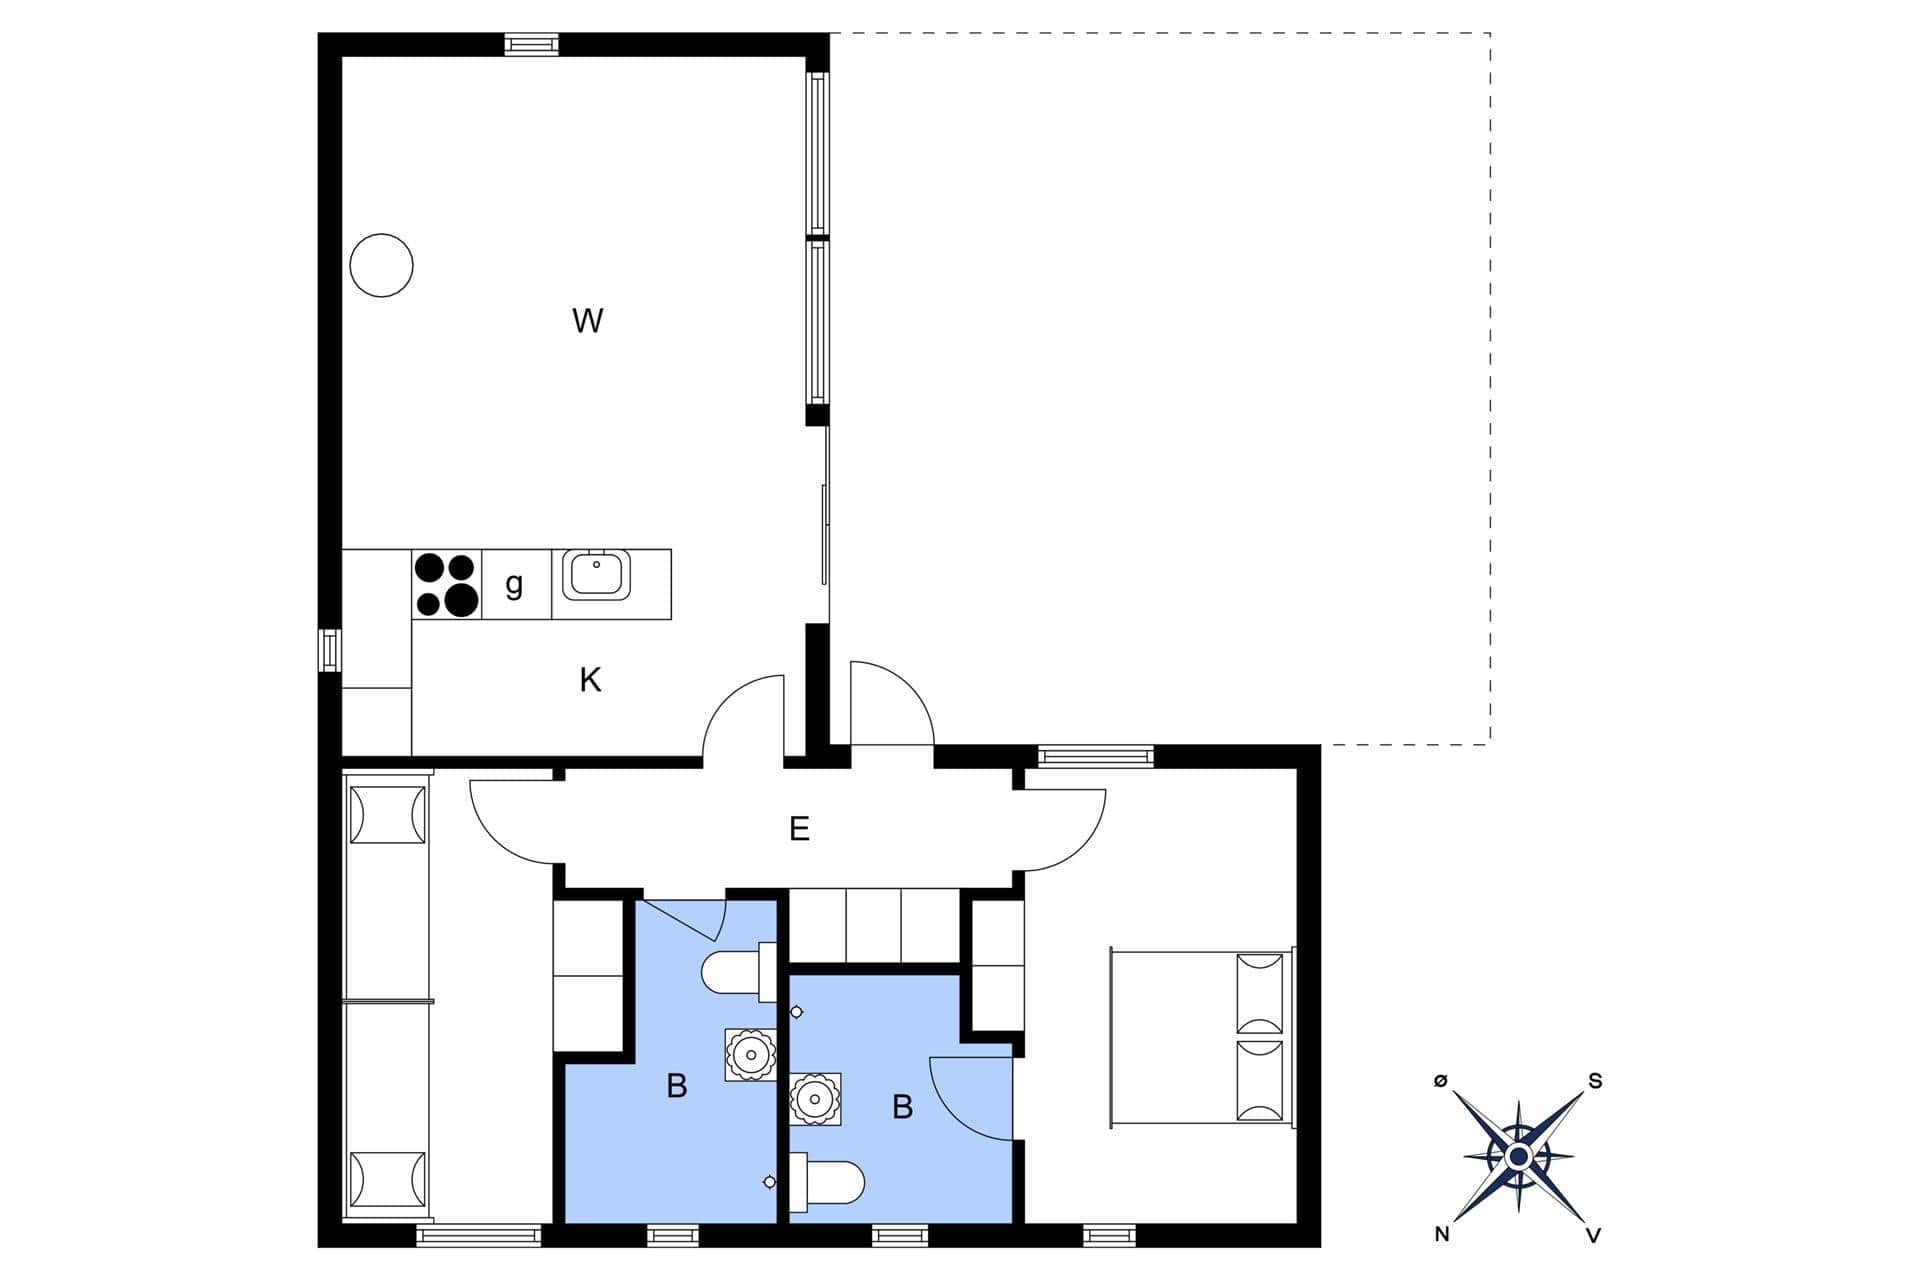 Interior 17-3 Holiday-home M642755, Oddevejen 8, DK - 5500 Middelfart